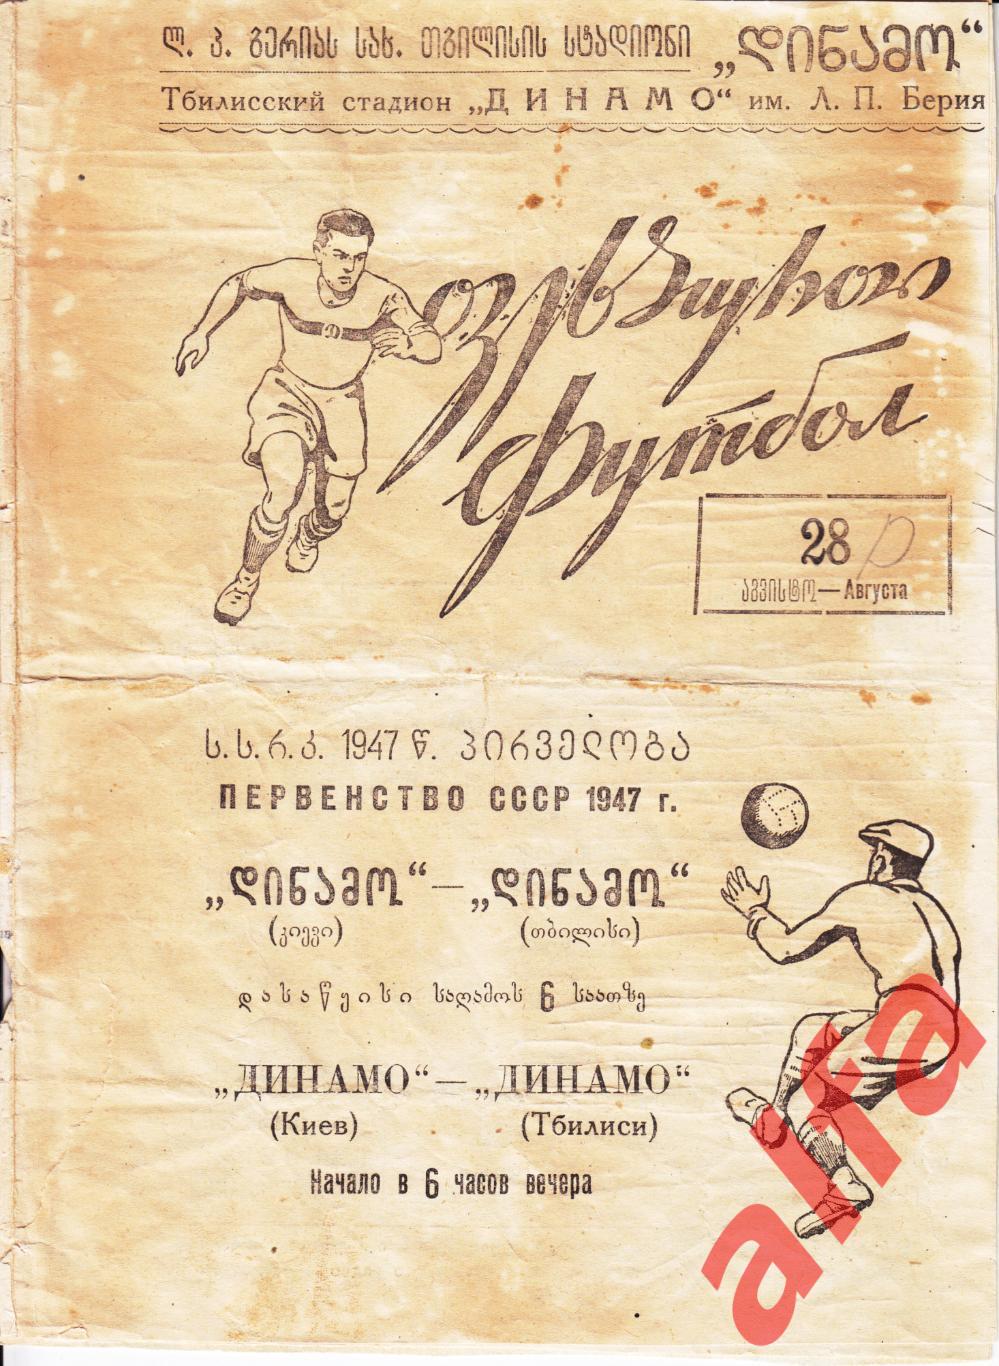 Динамо Тбилиси - Динамо Киев 28.08.1947